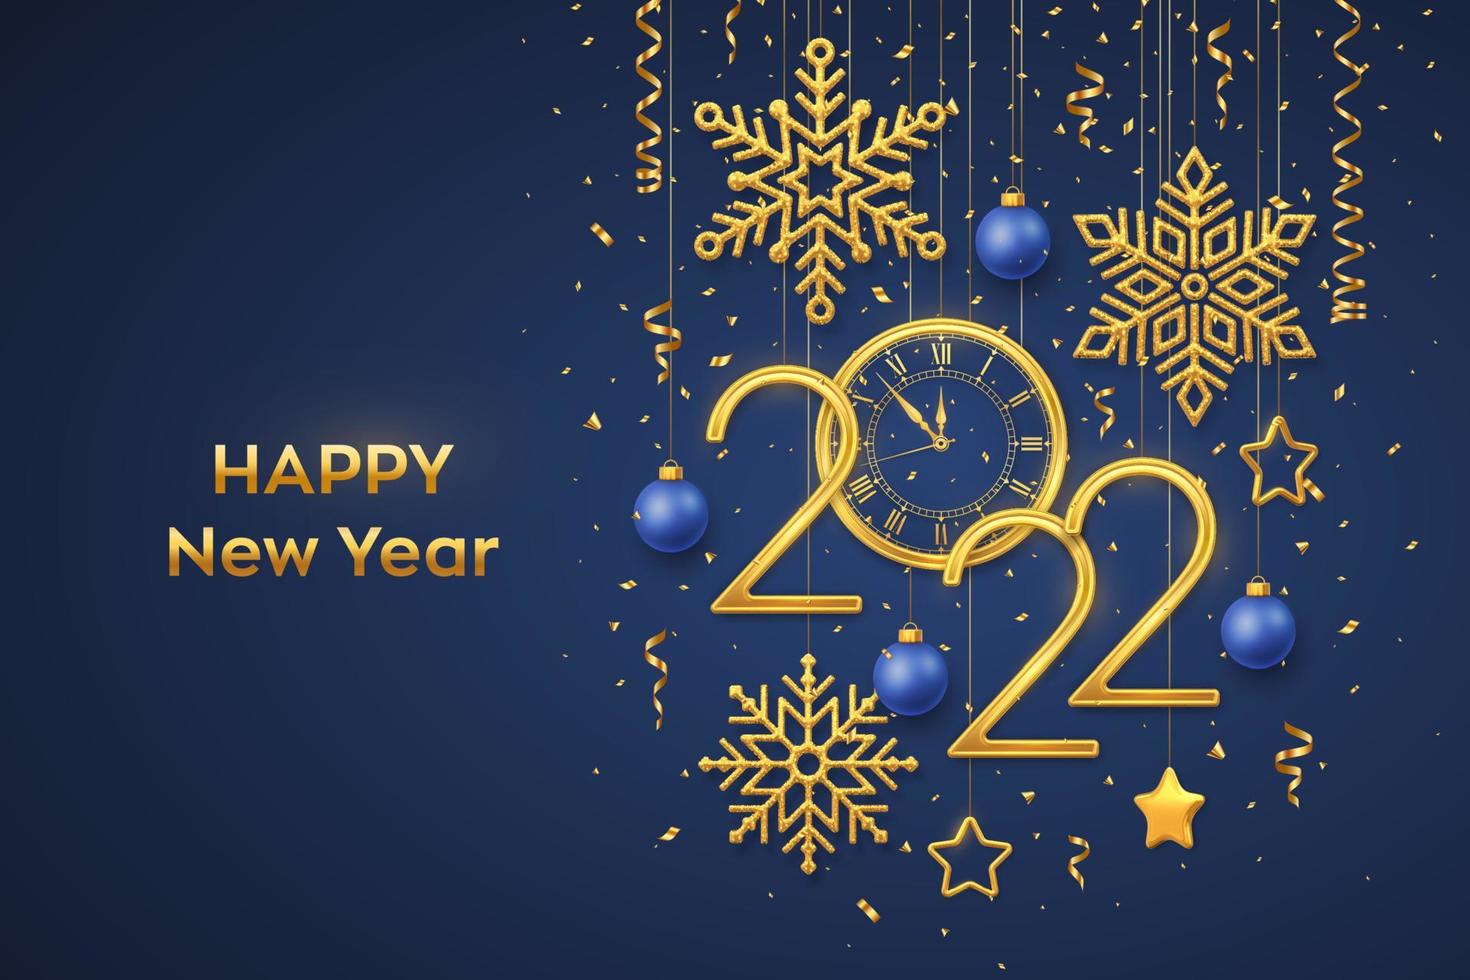 gelukkig nieuw 2022 jaar. gouden metalen cijfers 2022 en horloge met Romeinse cijfers en aftellen middernacht, vooravond voor het nieuwe jaar. hangende gouden sterren, sneeuwvlokken, ballen op blauwe achtergrond. vectorillustratie. vector